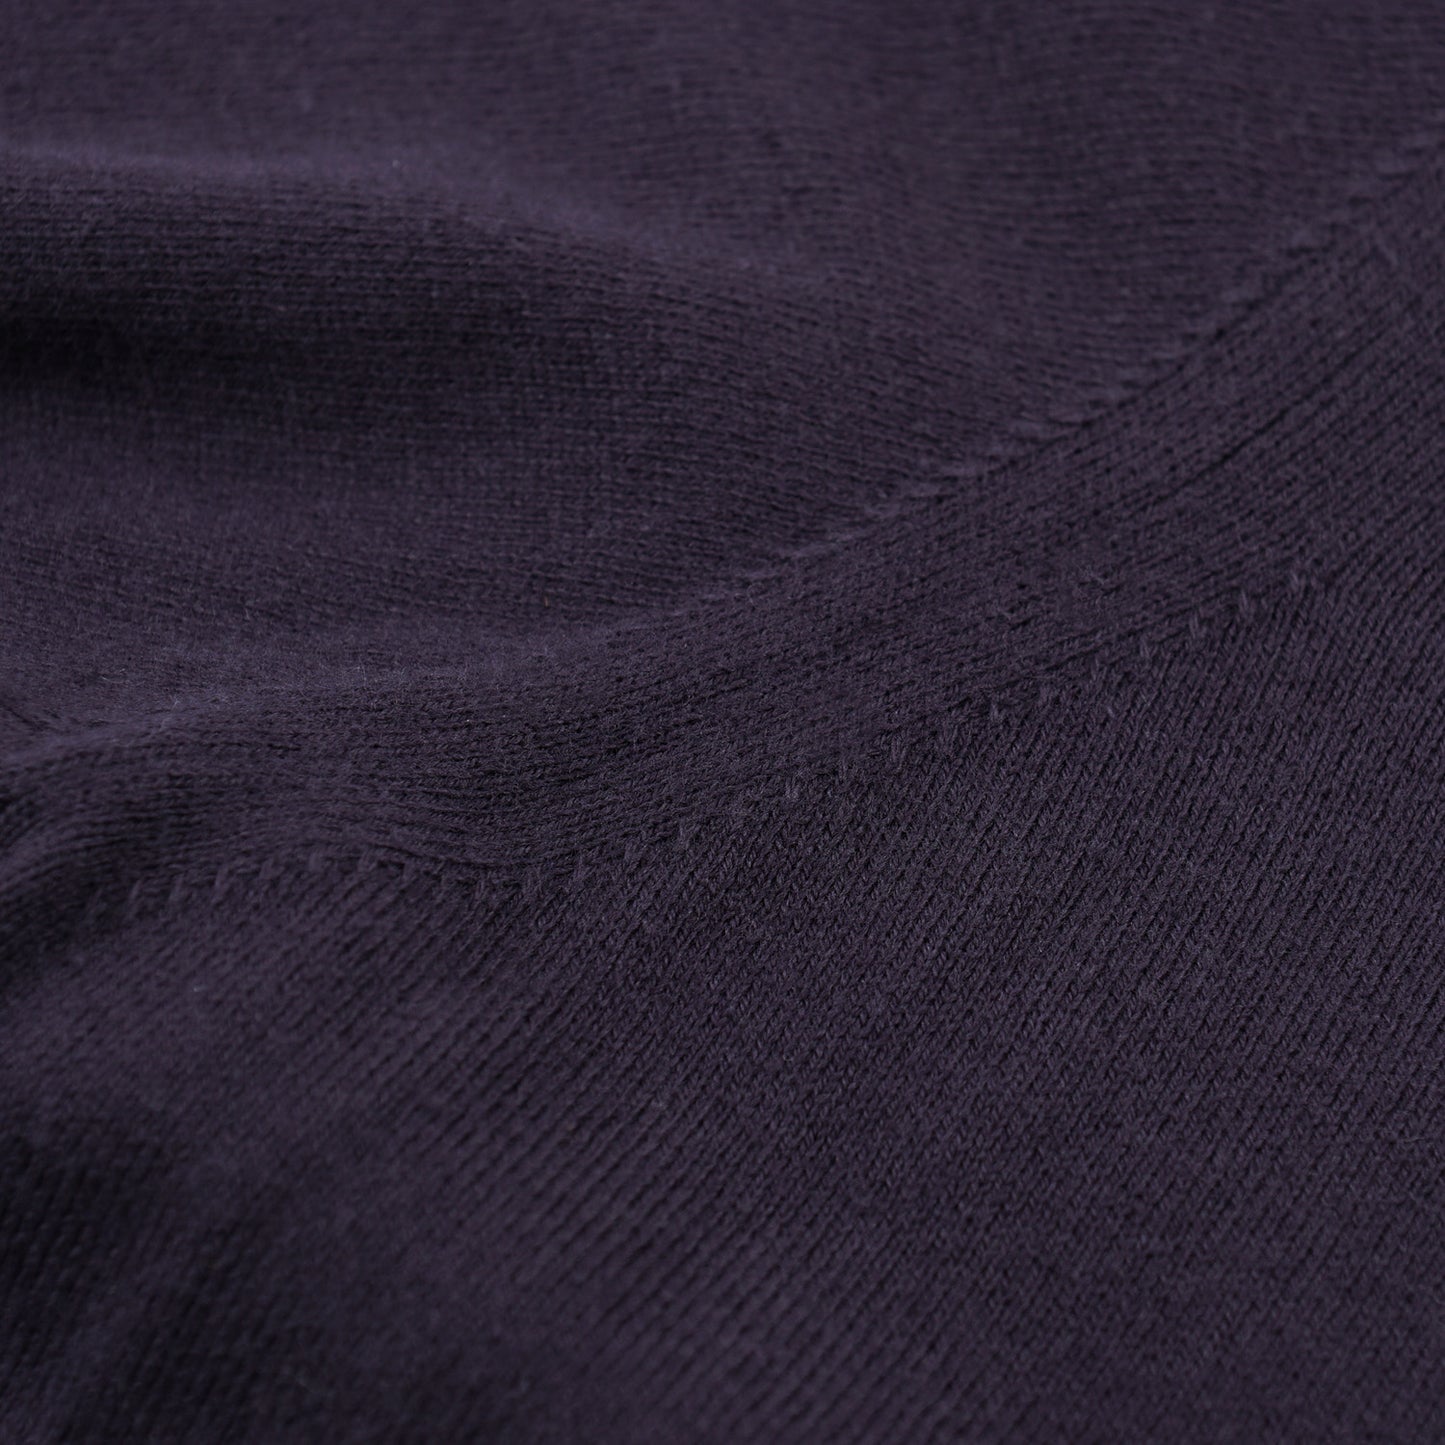 Cruciani Contrast Knit Cotton Sweater - Top Shelf Apparel